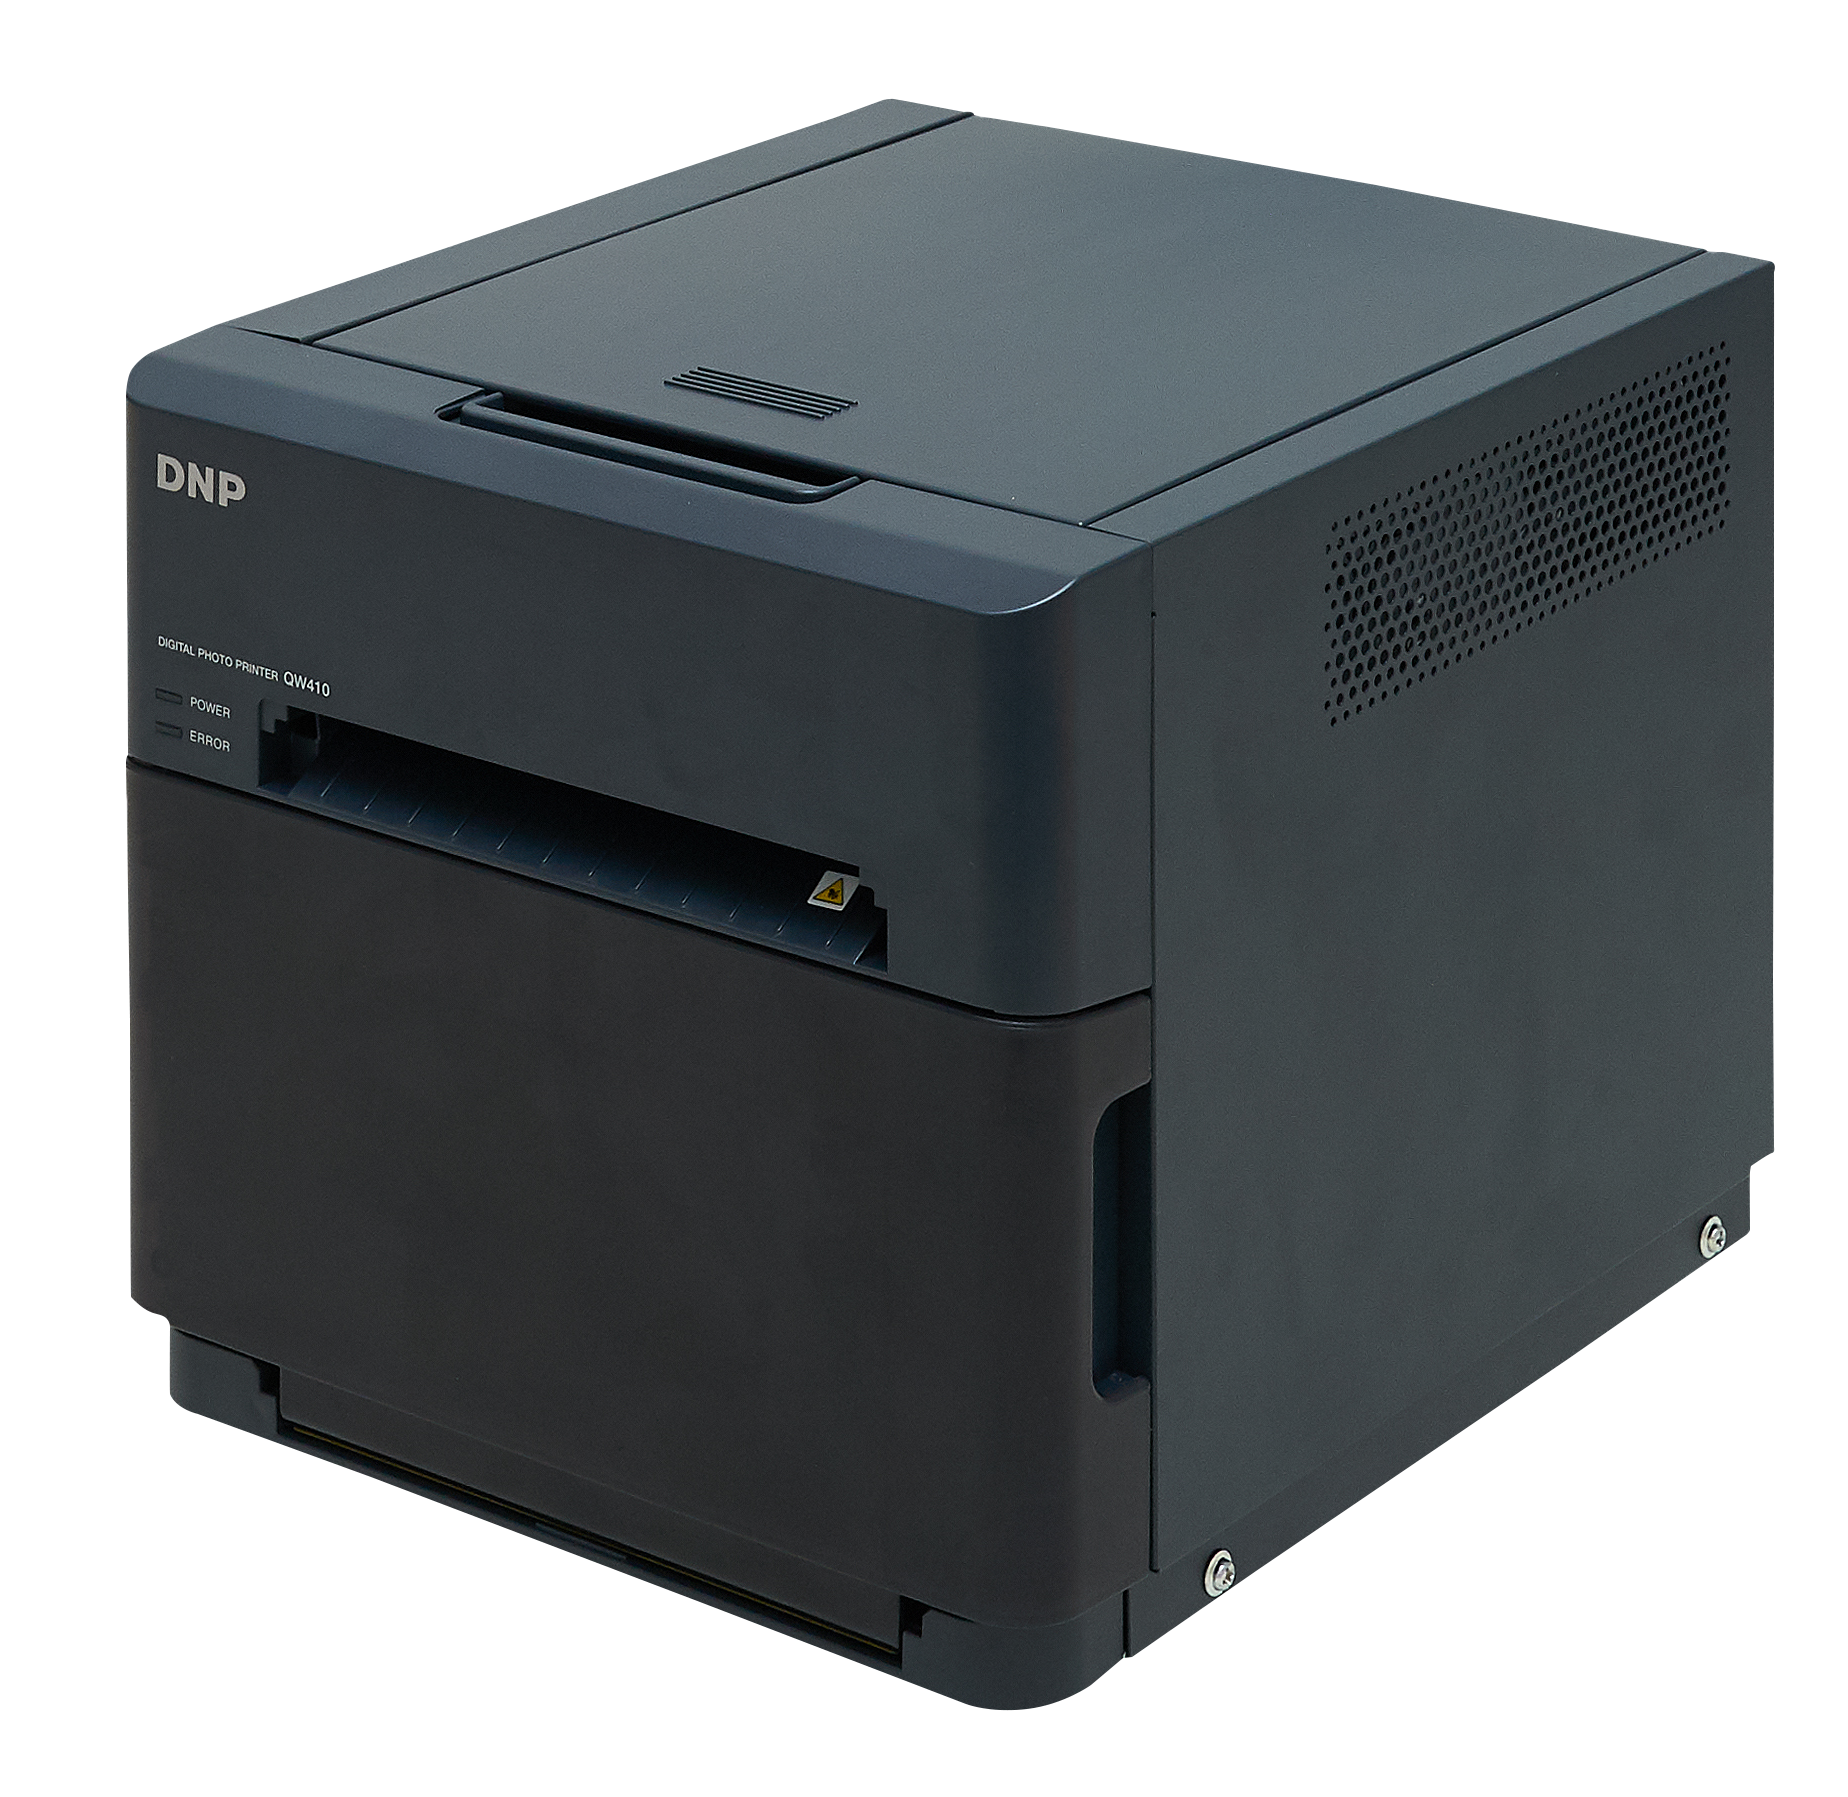 DNP Photo Announces New Compact Dye Sublimation Photo Printer